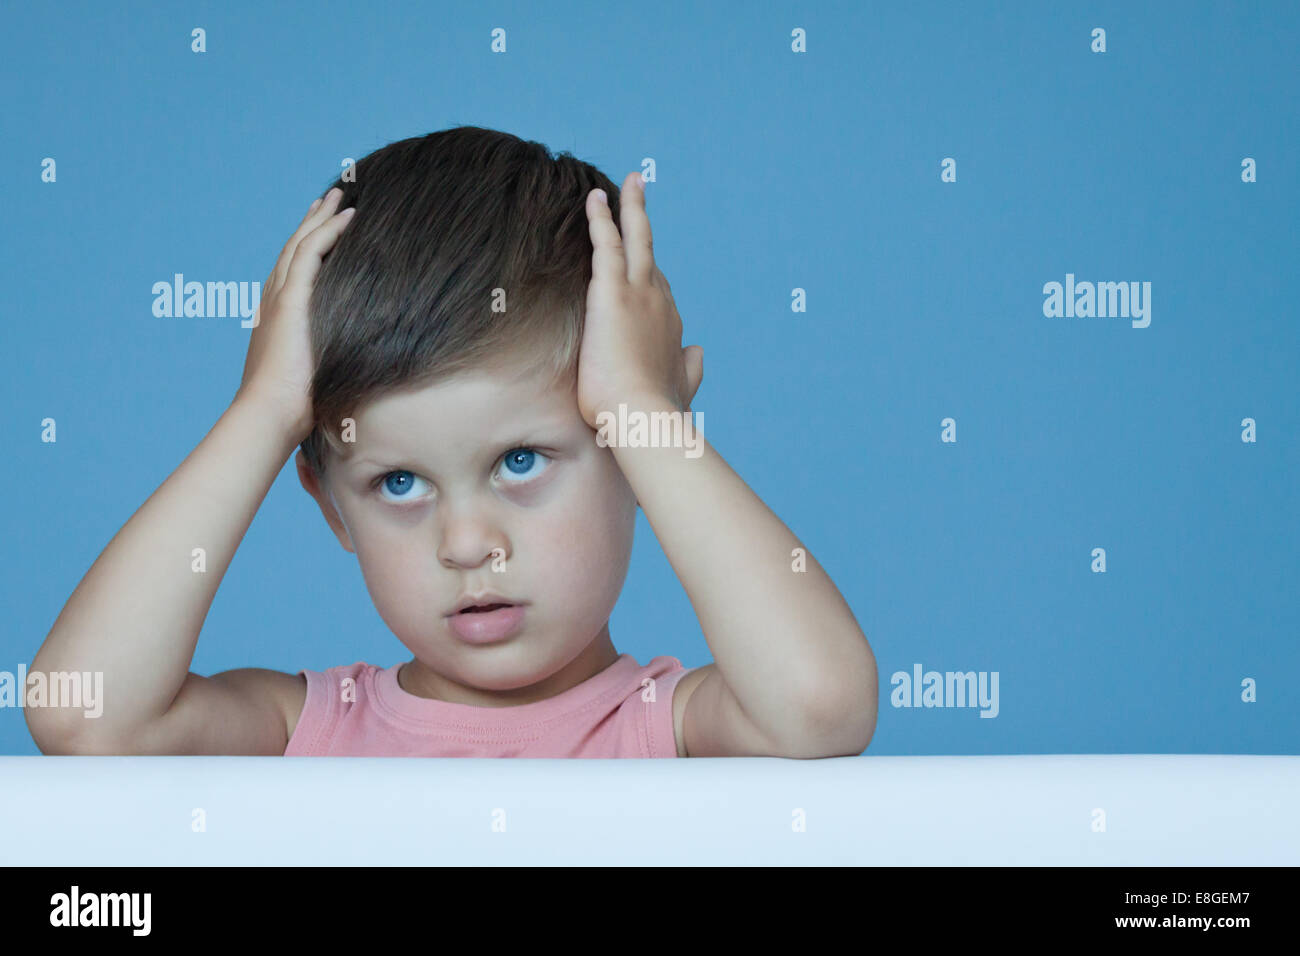 Drei Jahre alte junge hält Hand auf Gesicht ausdrückliche Gefühle wie Verlegenheit Nachdenklichkeit über blaue Wand Hintergrund posiert Stockfoto